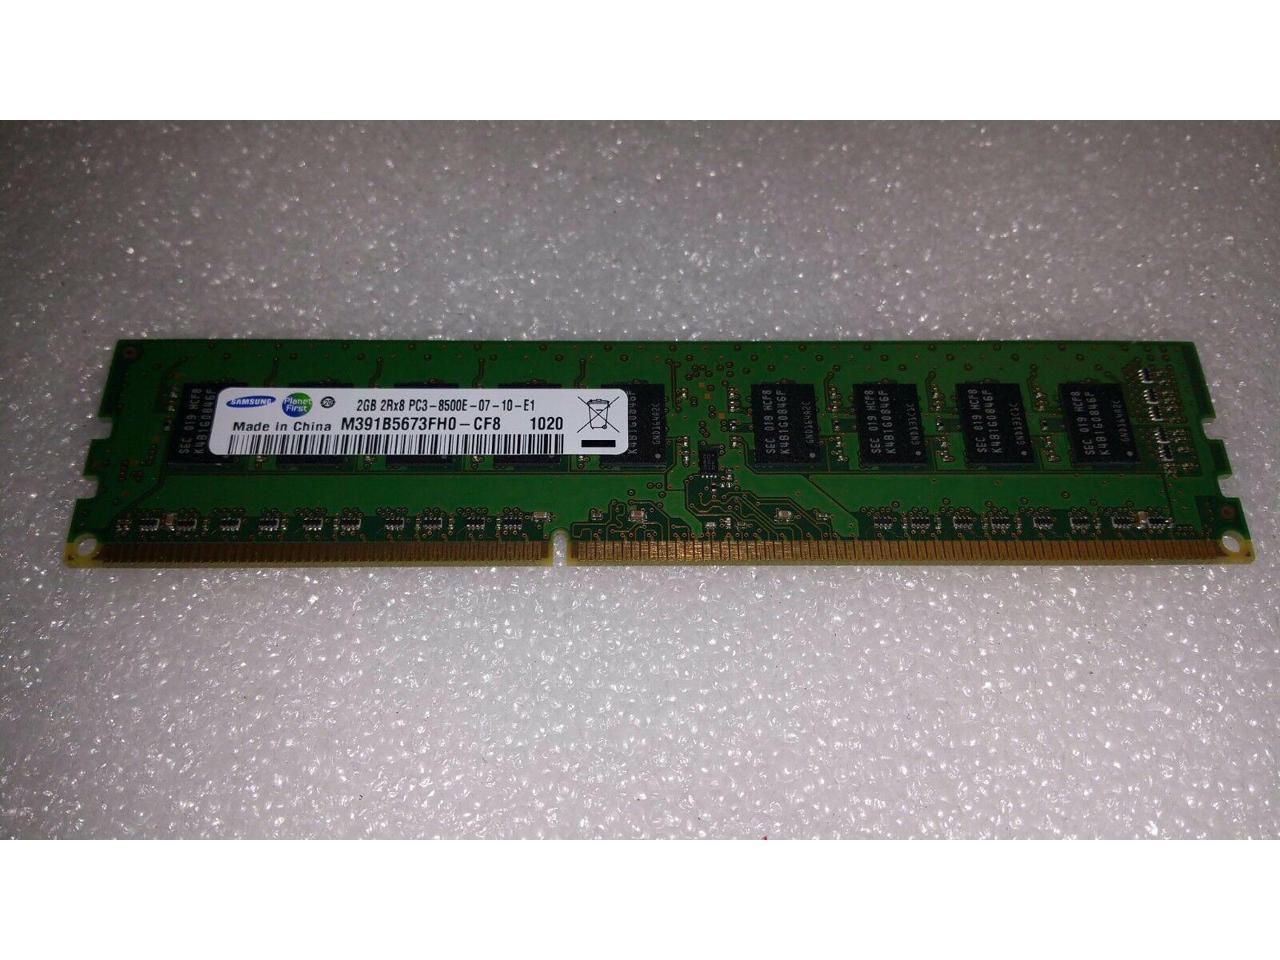 2GB Samsung M391B5673EH1-CF8 PC3-8500E 1066MHz DDR3 2Rx8 ECC Server Memory RAM 